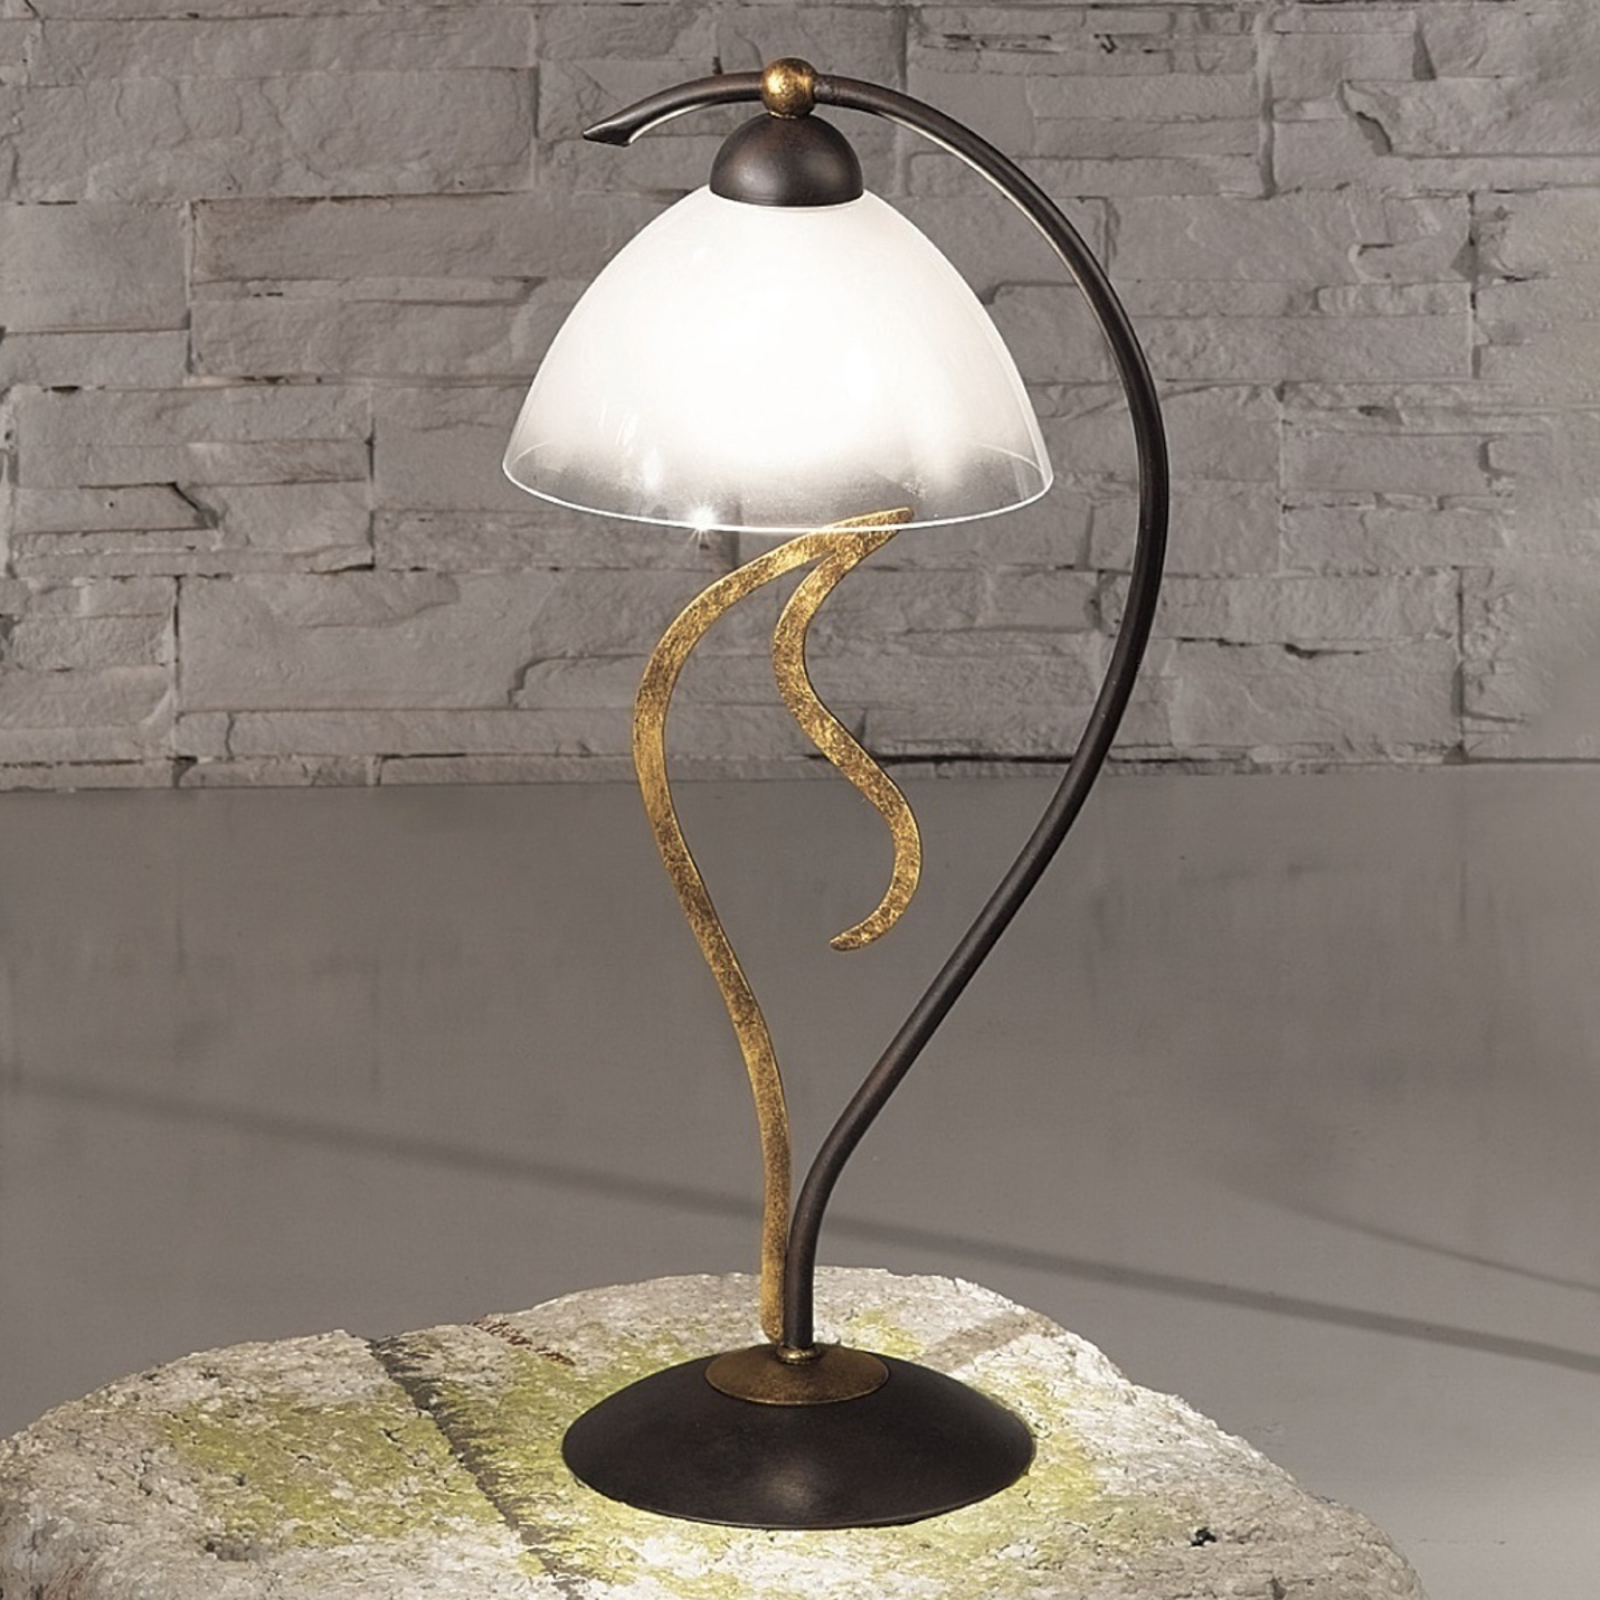 Lampa stołowa Amabile, rdzawo-złota, szklany klosz